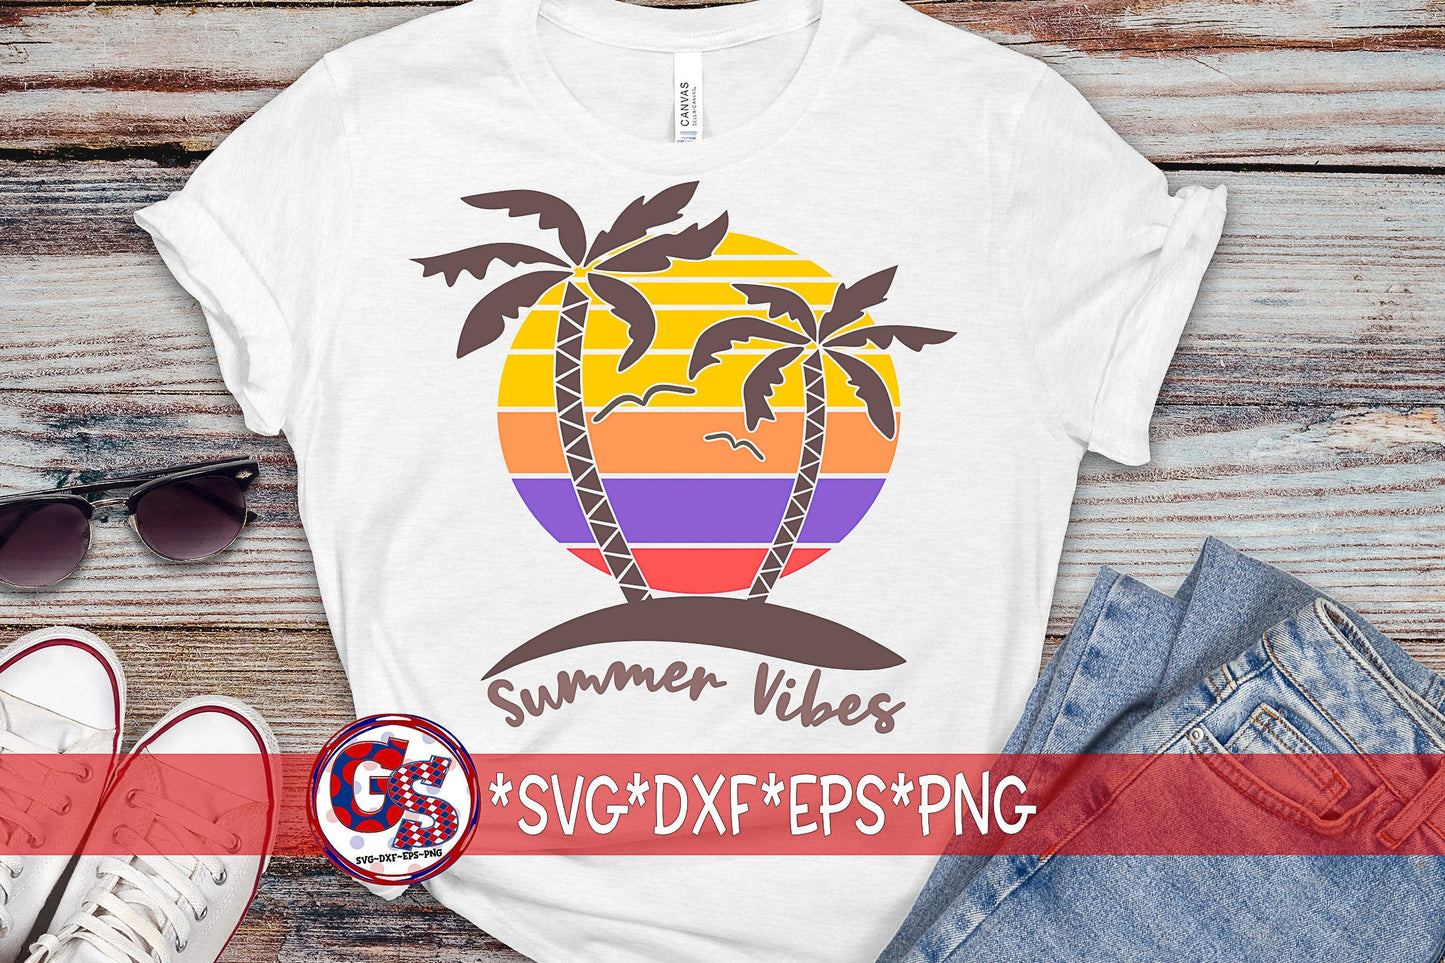 Sunset SVG | Palm Trees SVG | Summer SvG | Summer Vibes svg, dxf, eps, png. Summer SvG | Summer Sunset SvG | Instant Download Cut Files.